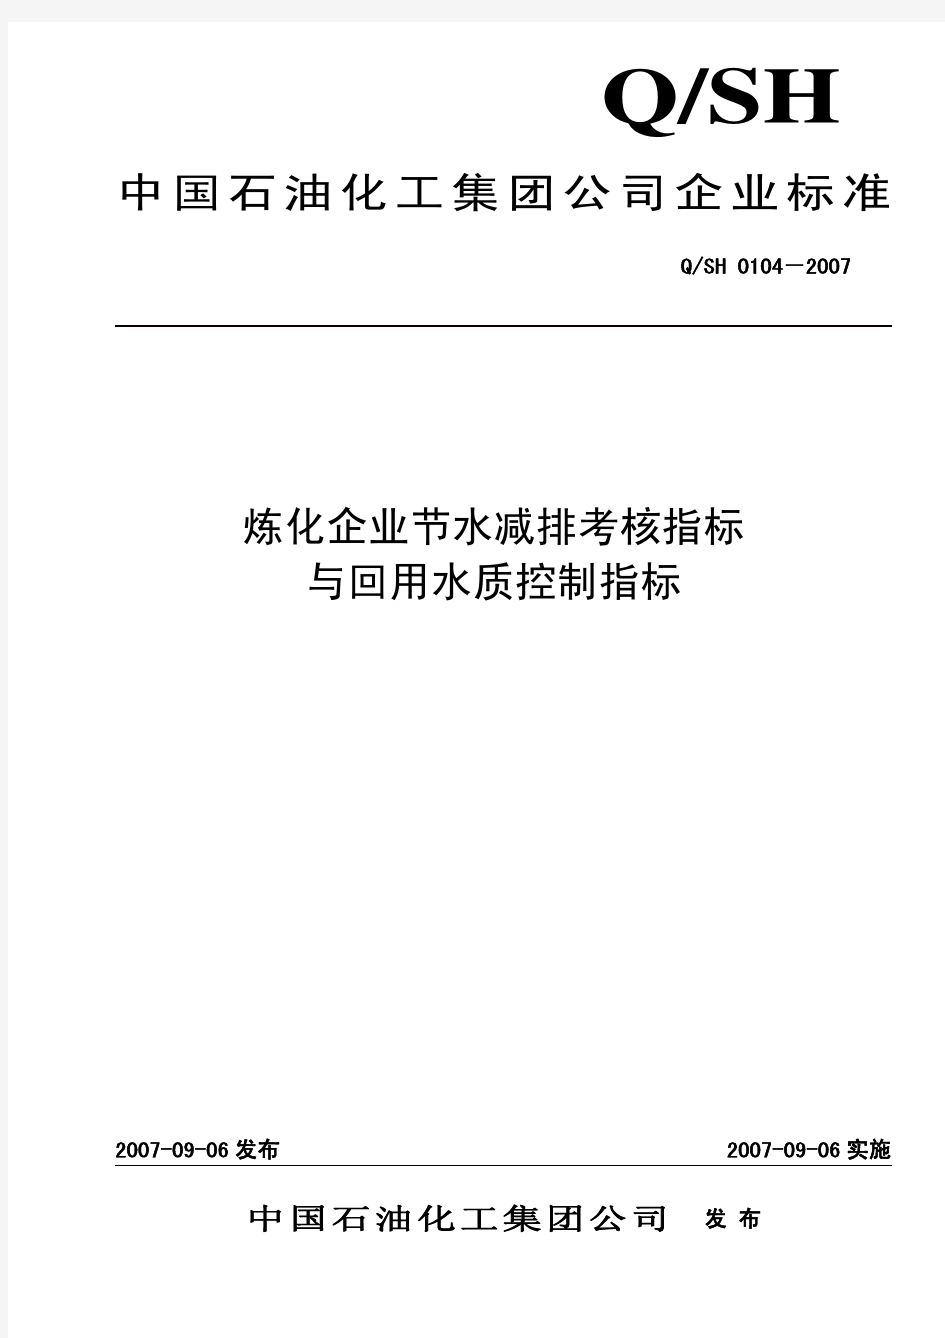 QSH0104-2007标准发布印刷稿